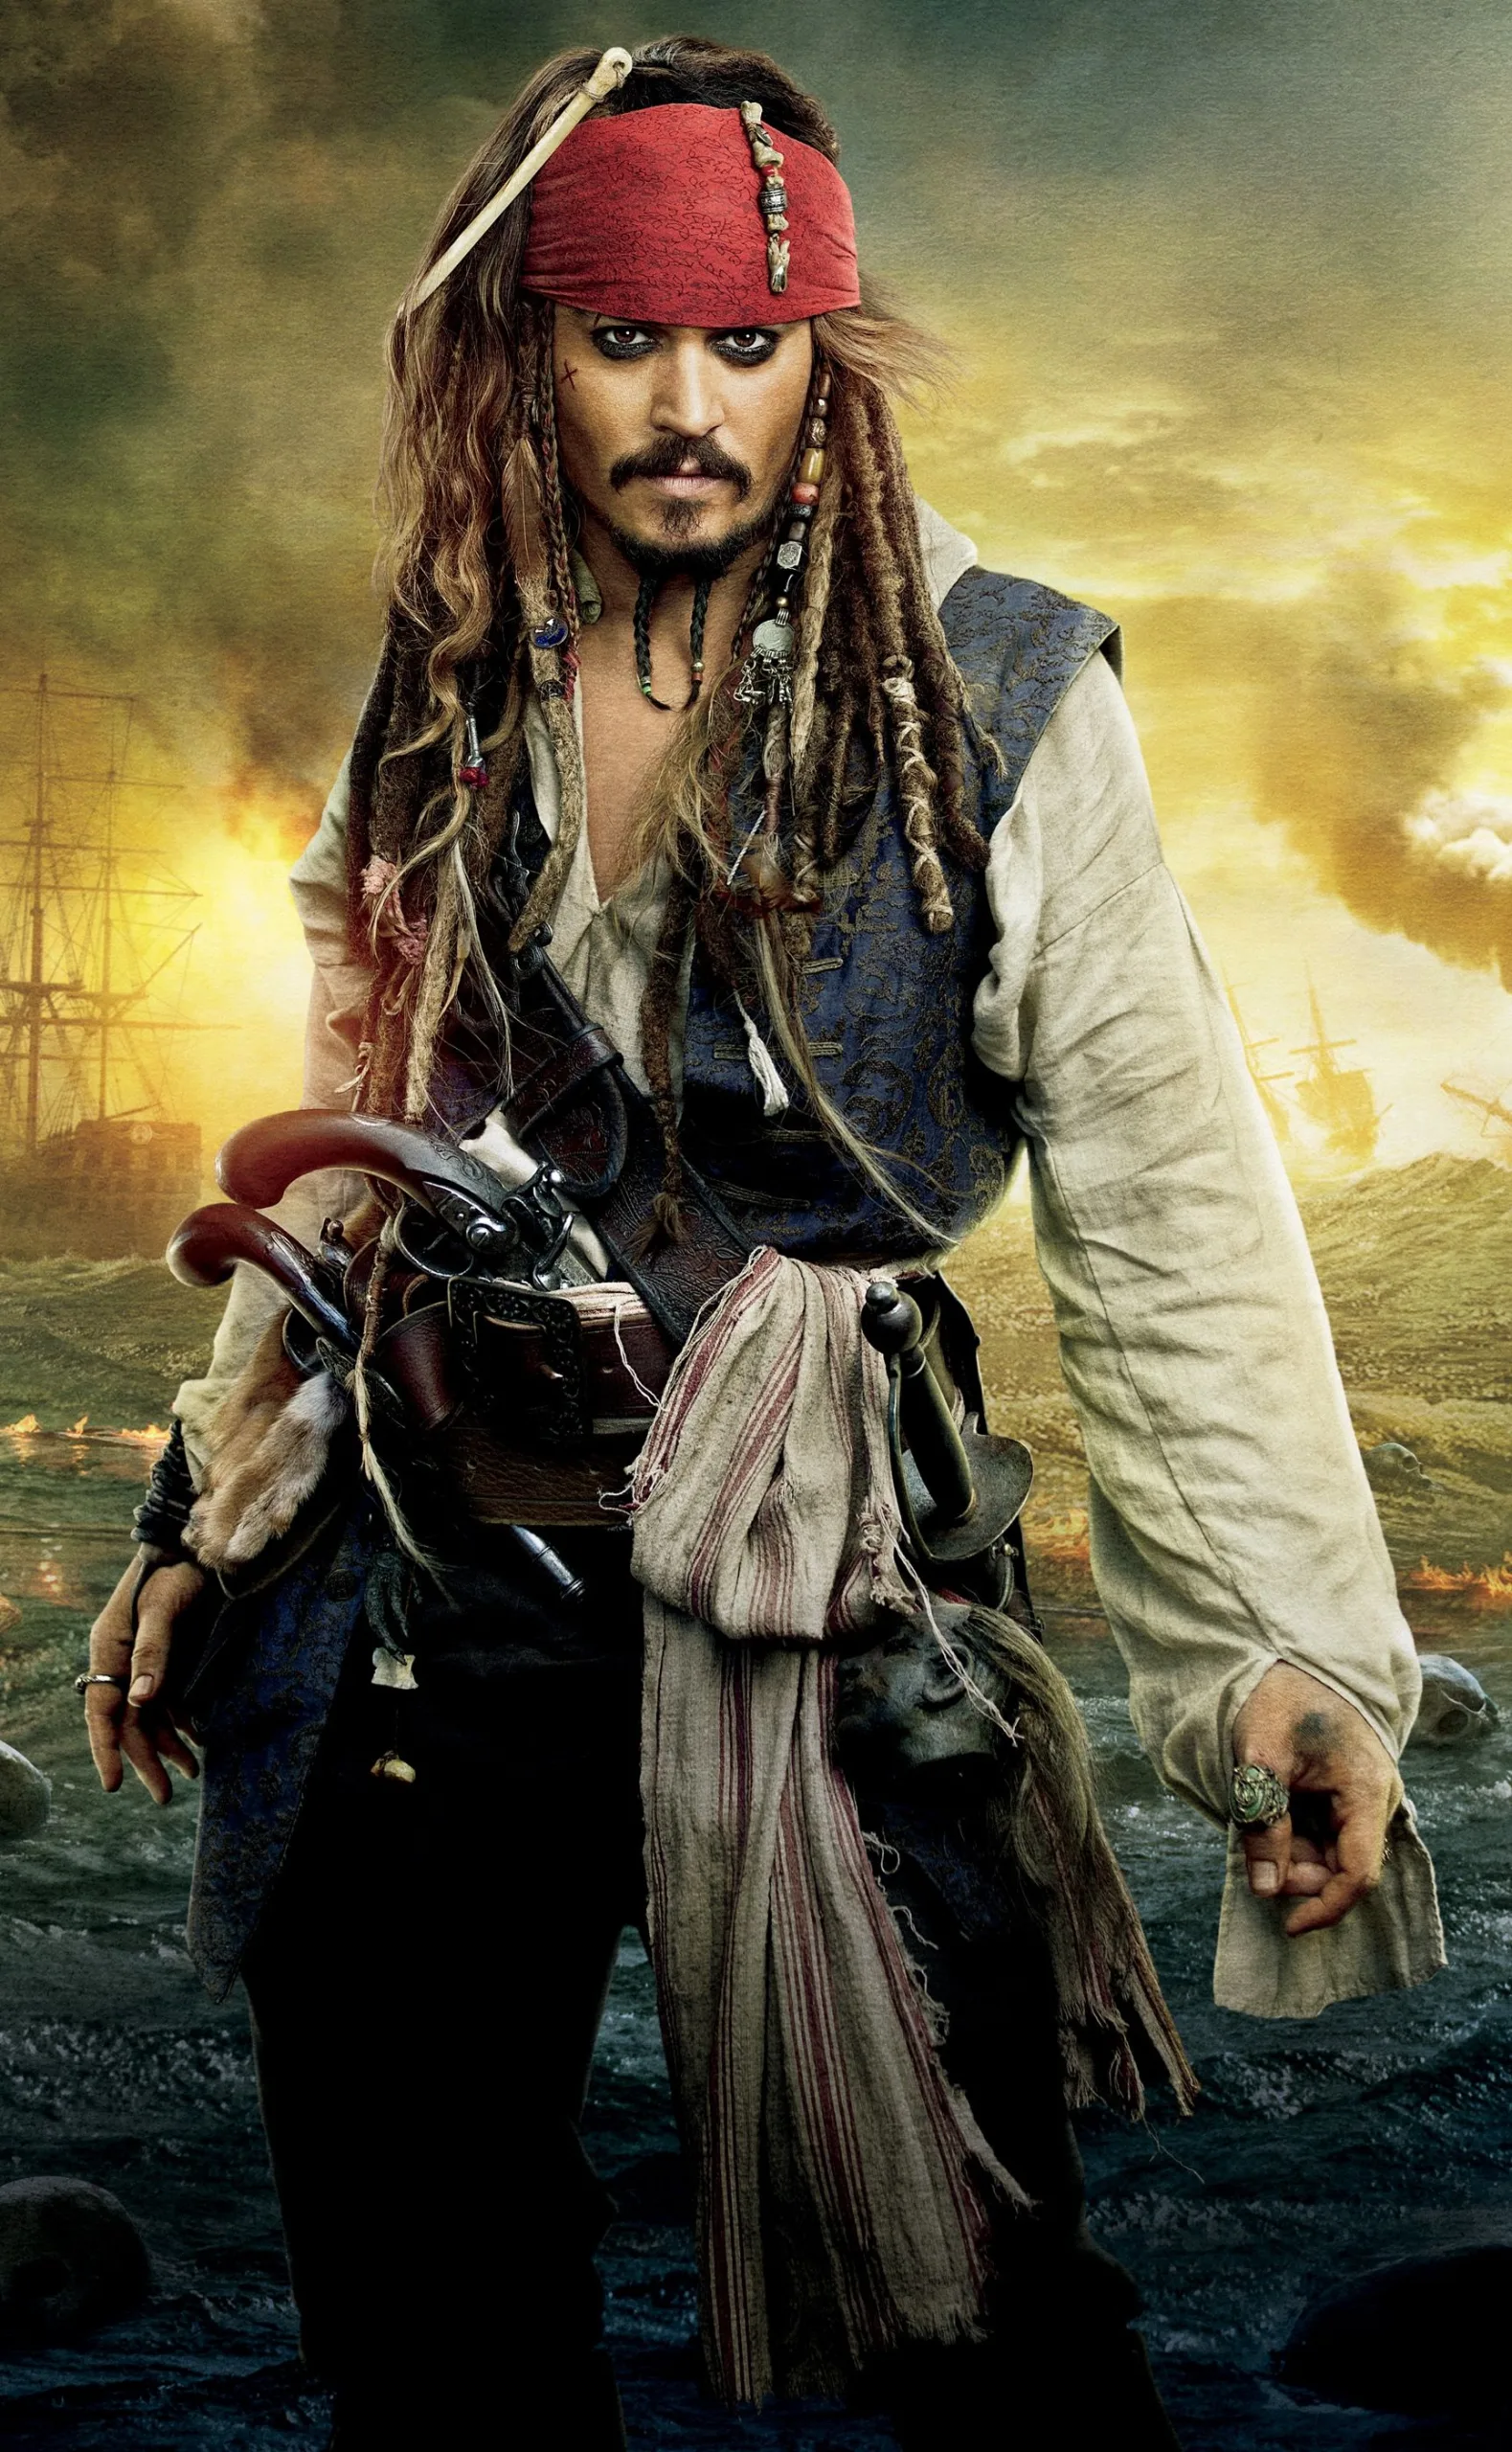 Disney aprova ideia para reboot de "Piratas do Caribe", diz roteirista